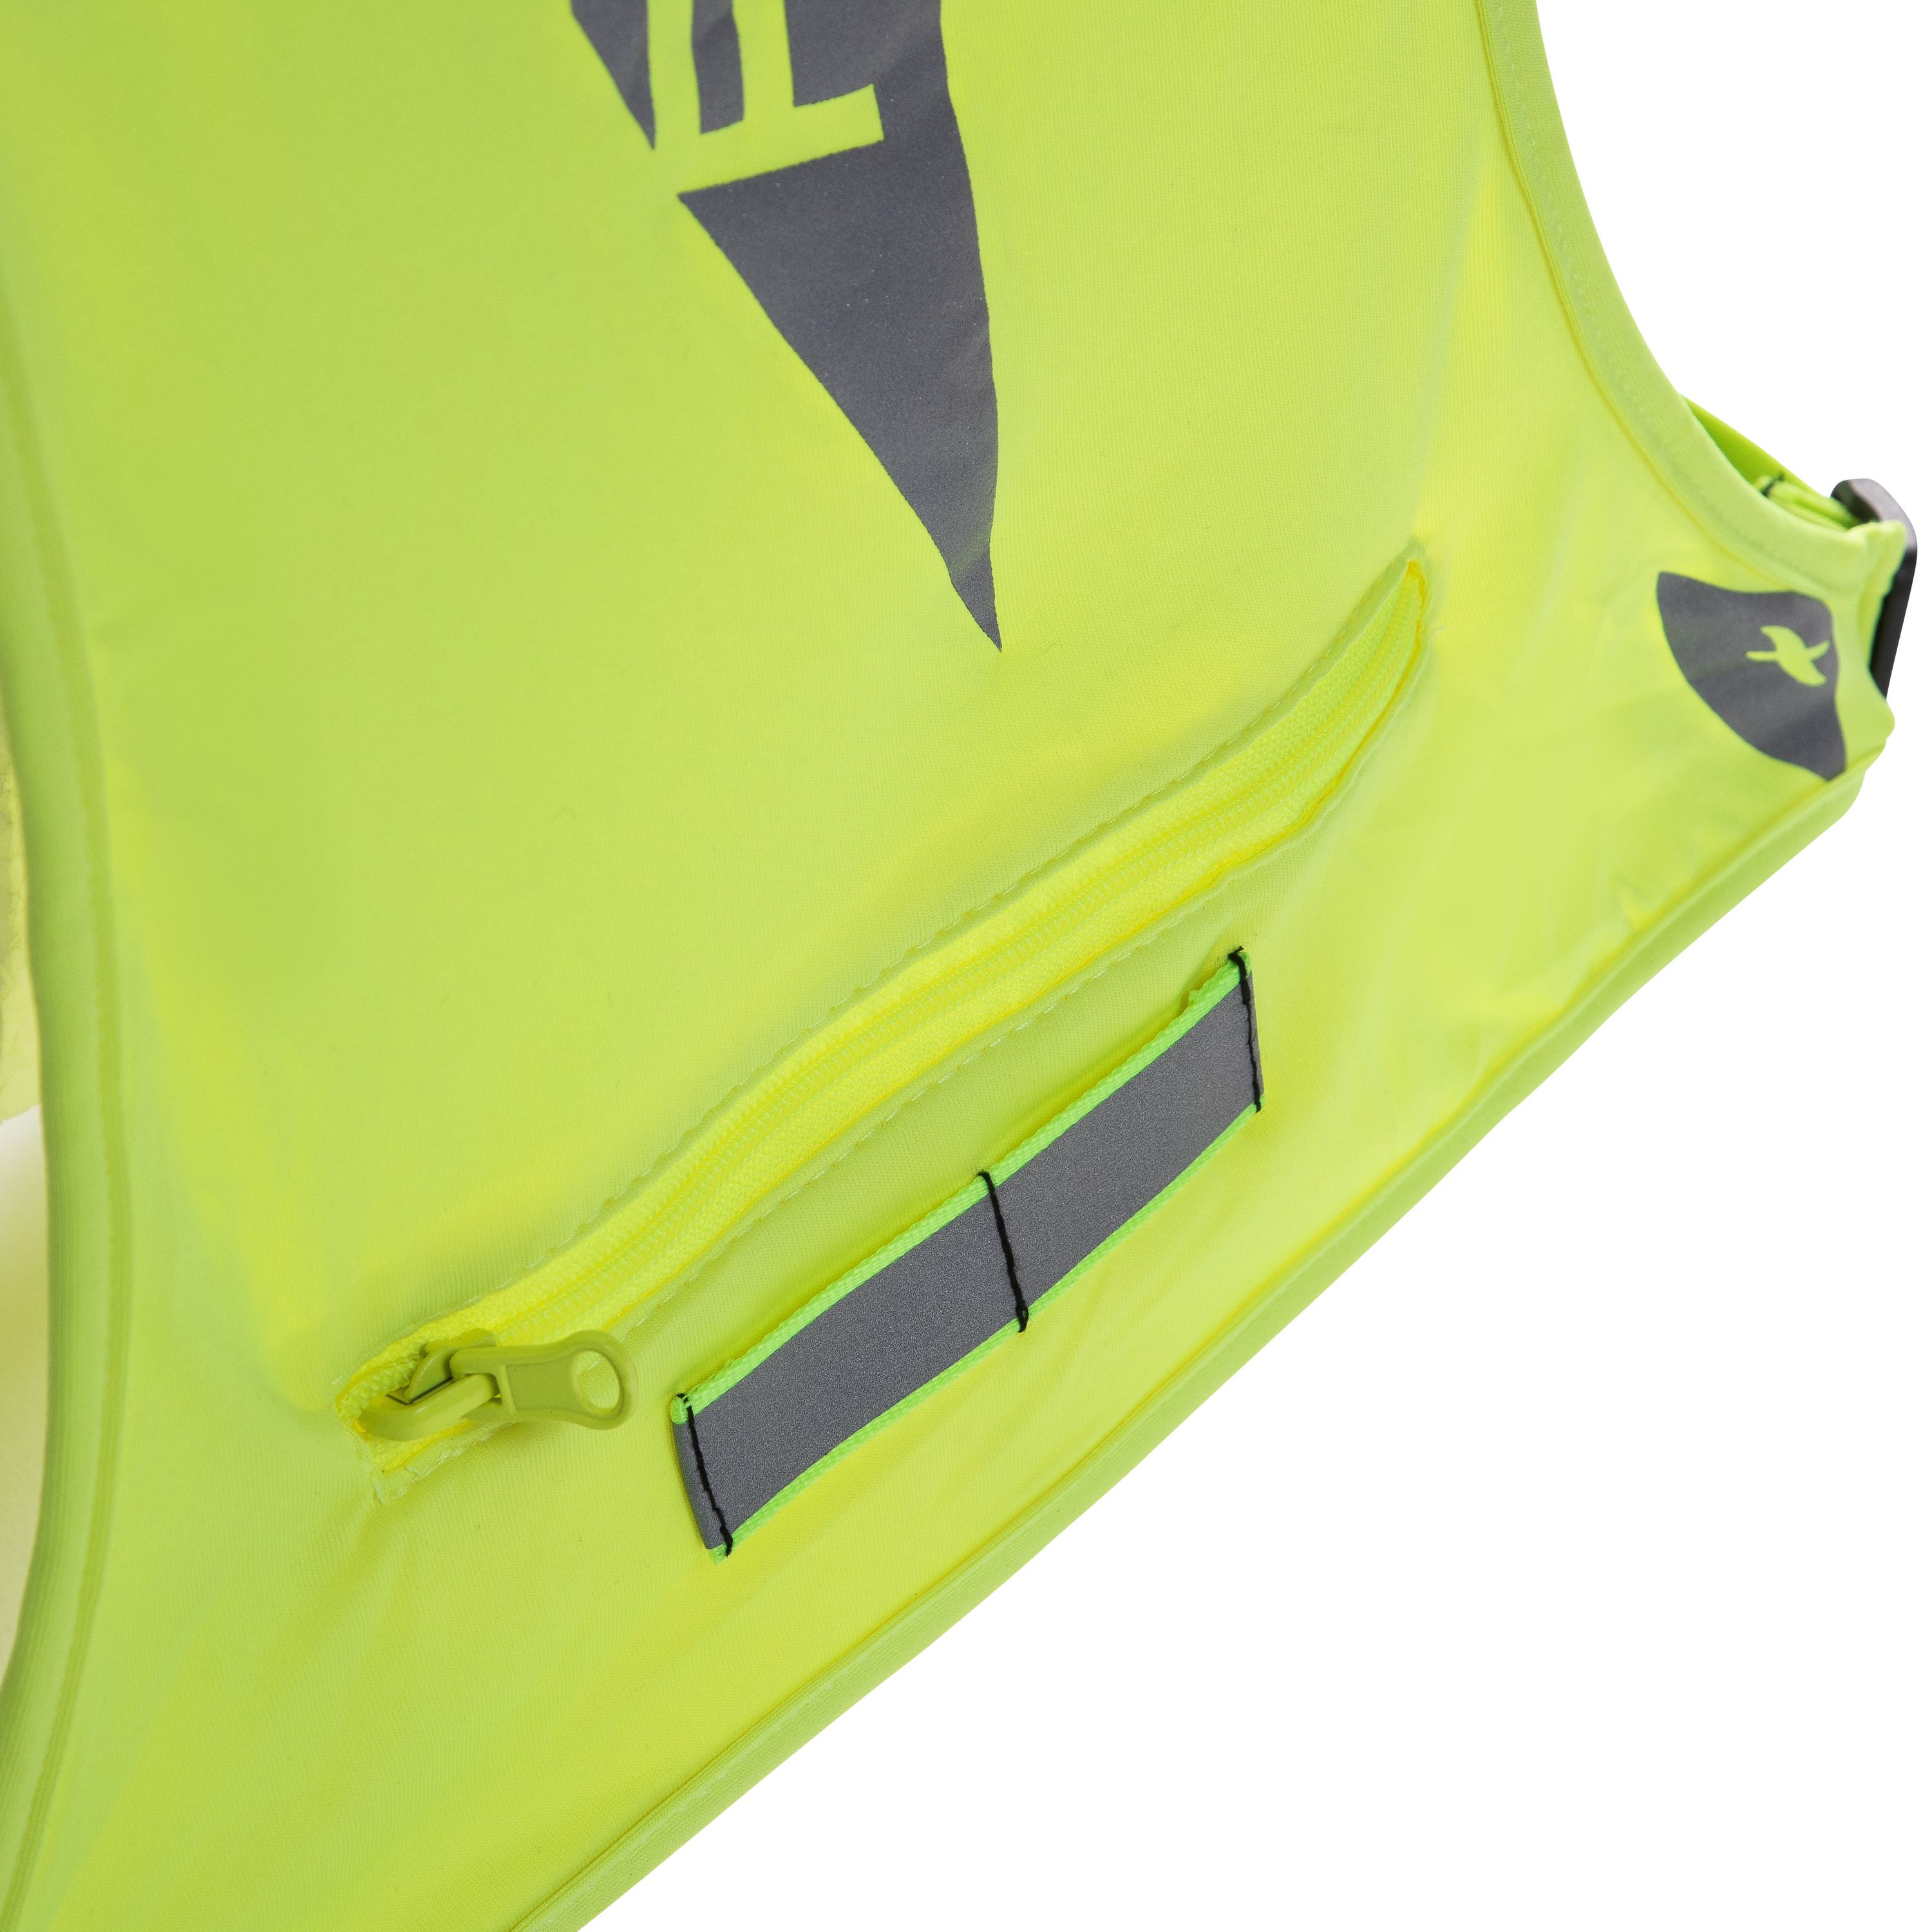 FITLETIC® Glo - Laufweste mit Reflektoren für Joggen, Laufen, Sport - reflektierende Warnweste